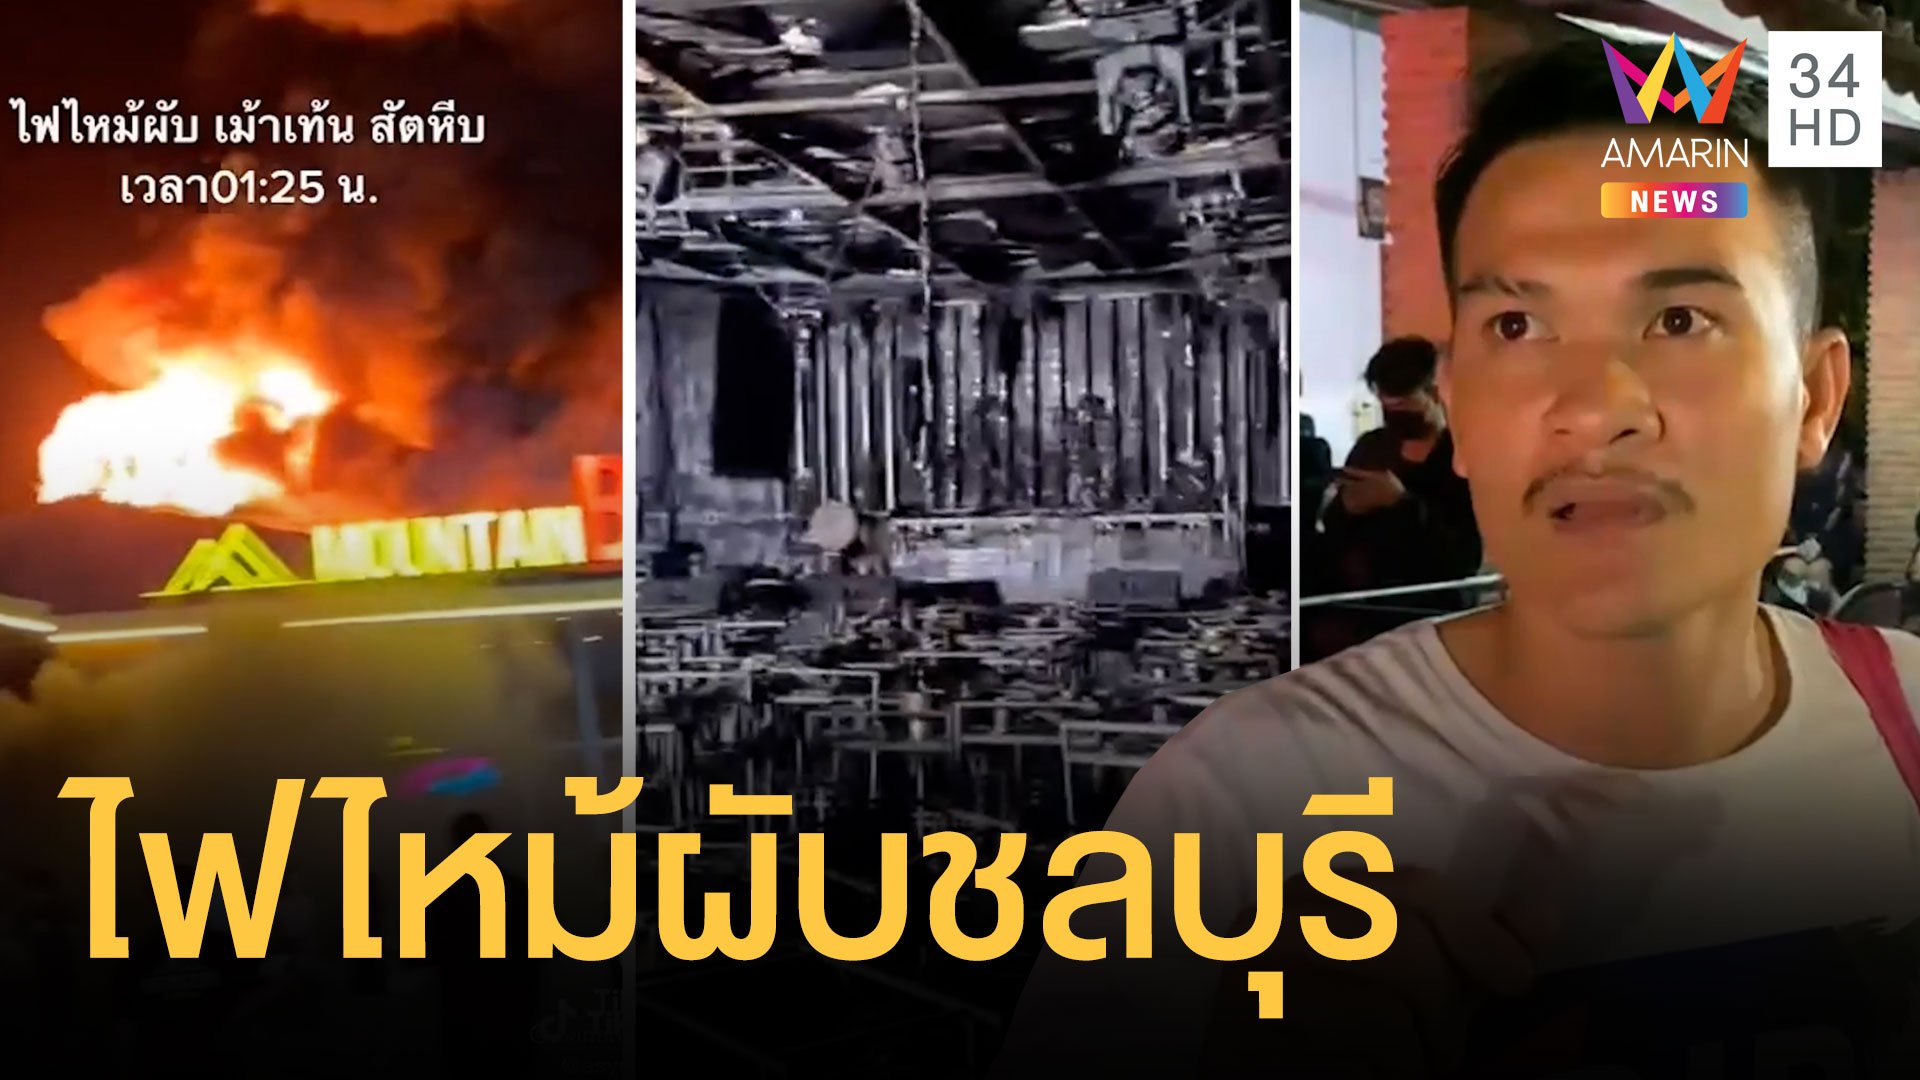 ไฟไหม้ผับชลบุรี นักเที่ยวหนีตายระทึก สลดคลอกดับ 13 ศพ ดีเจเล่านาทีระเบิด | ข่าวอรุณอมรินทร์ | 5 ส.ค. 65 | AMARIN TVHD34